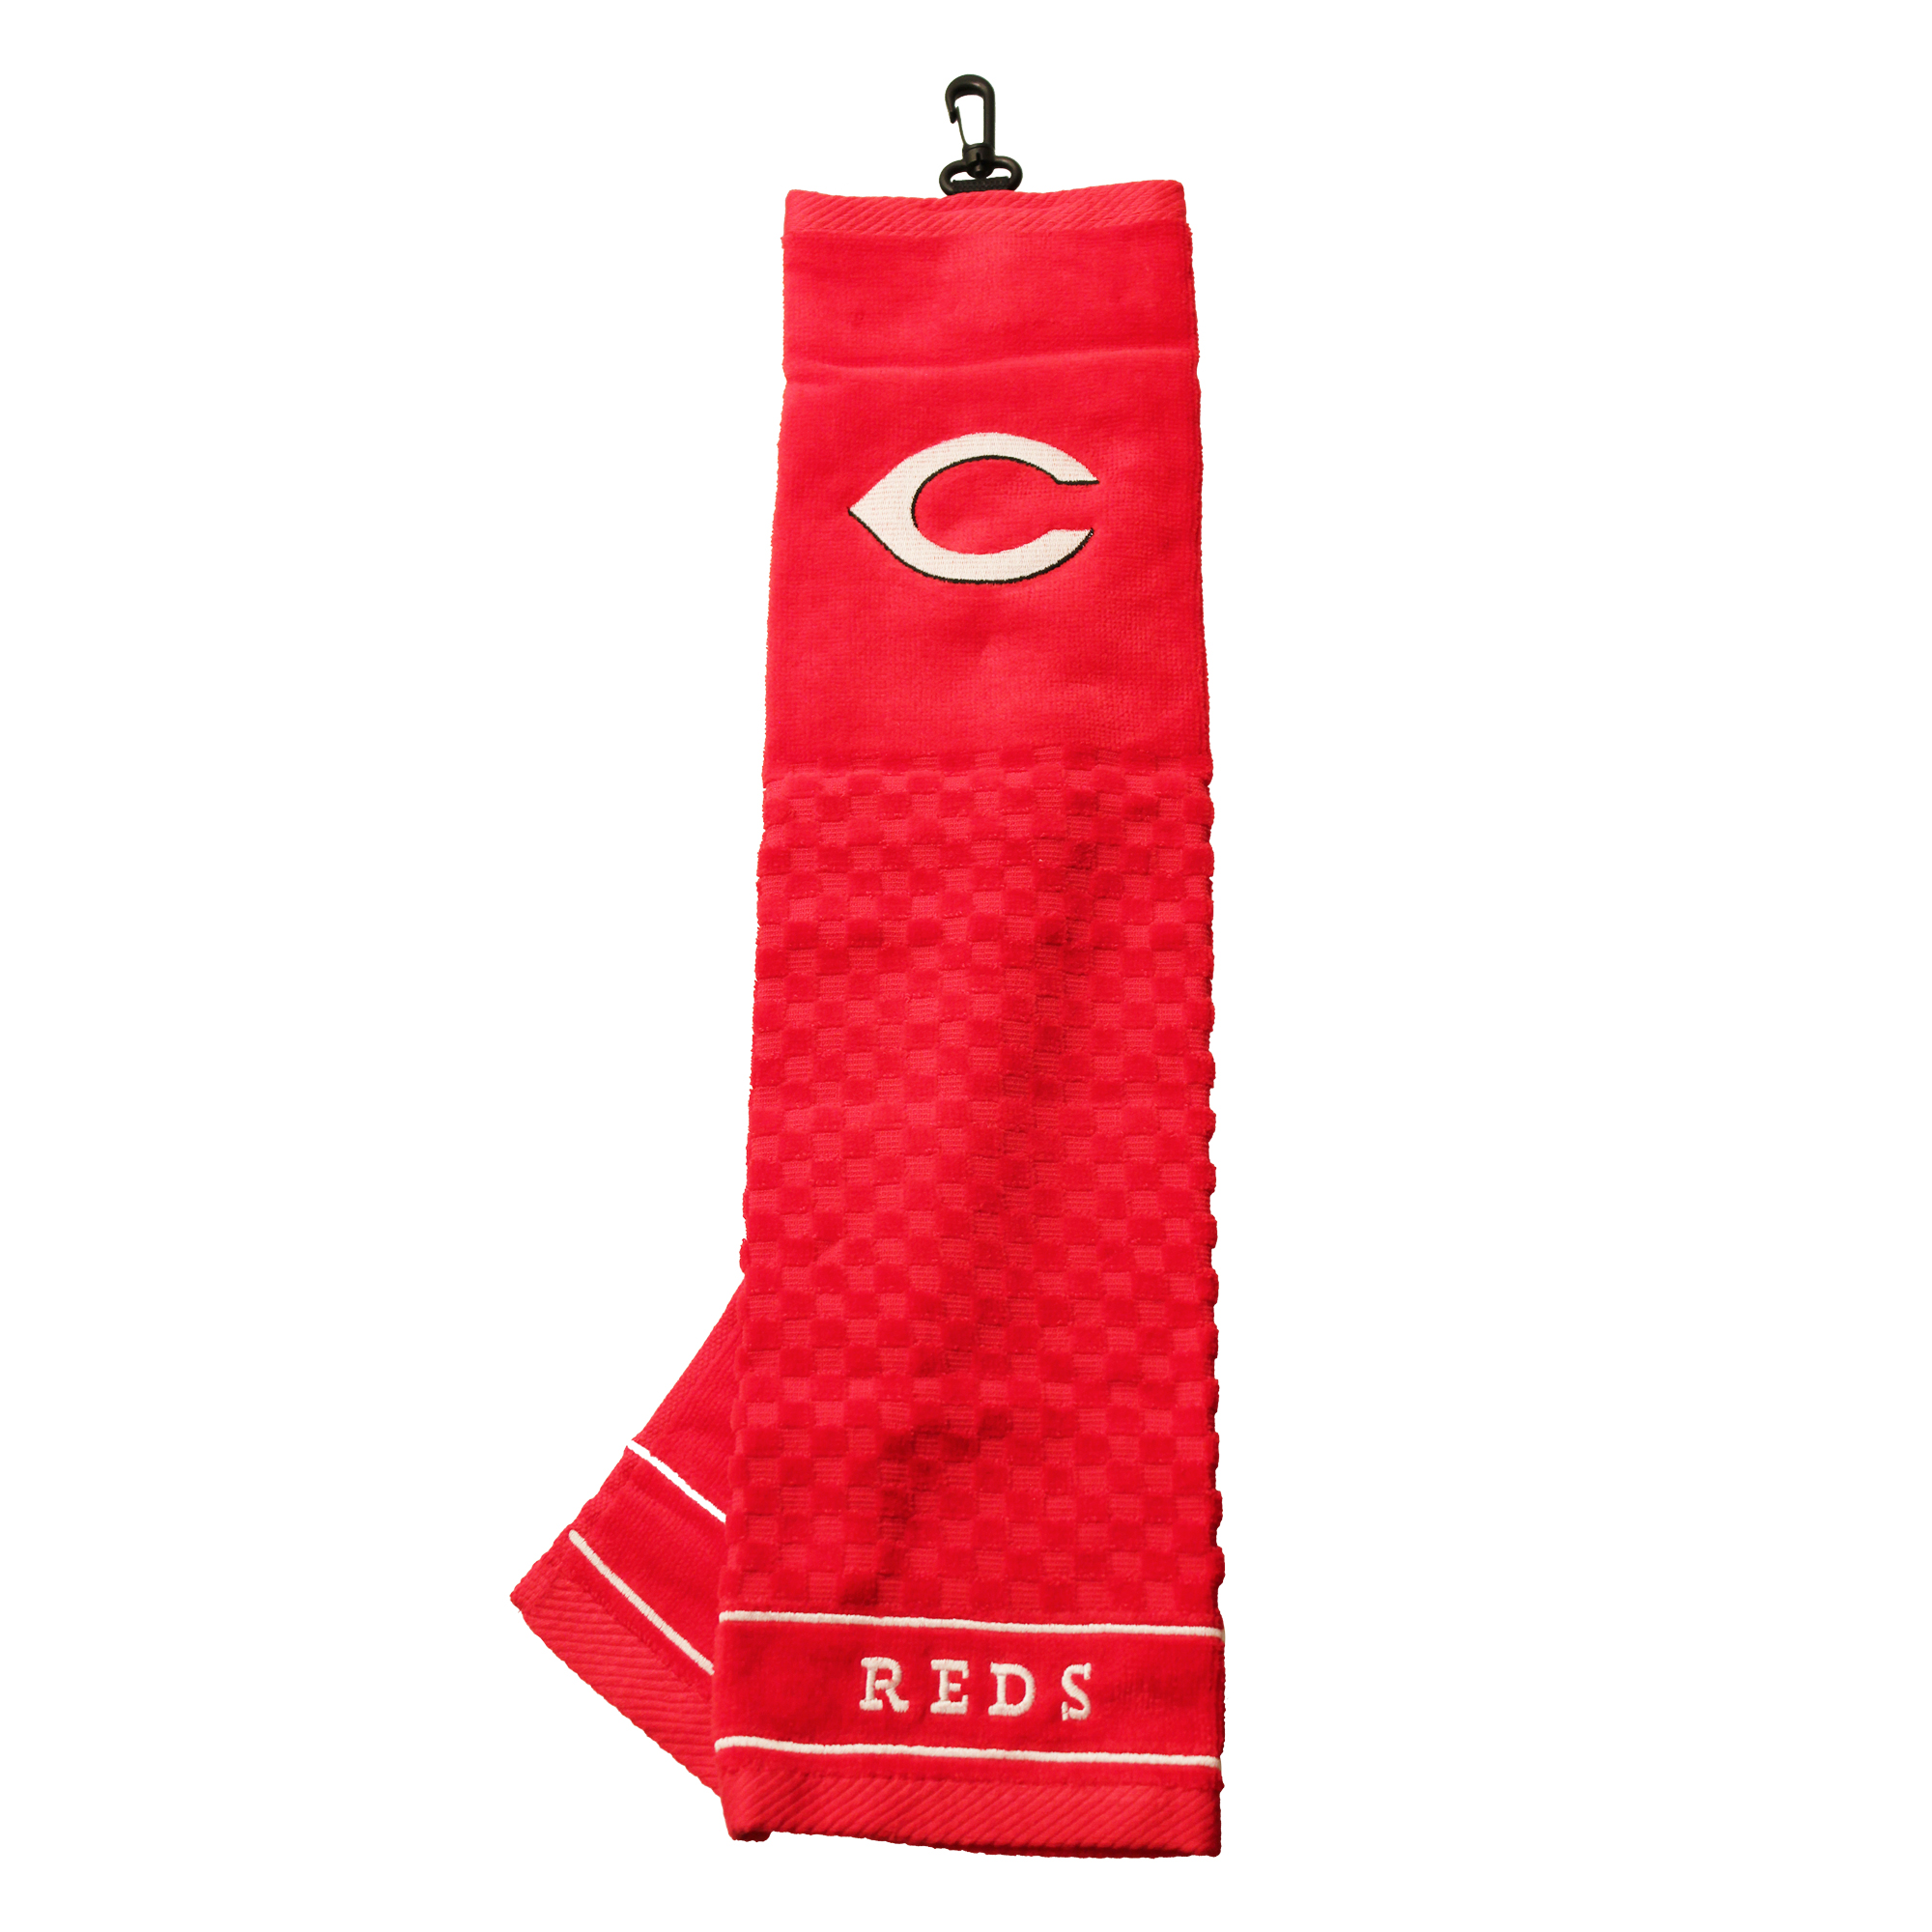 Cincinnati Reds Embroidered Towel